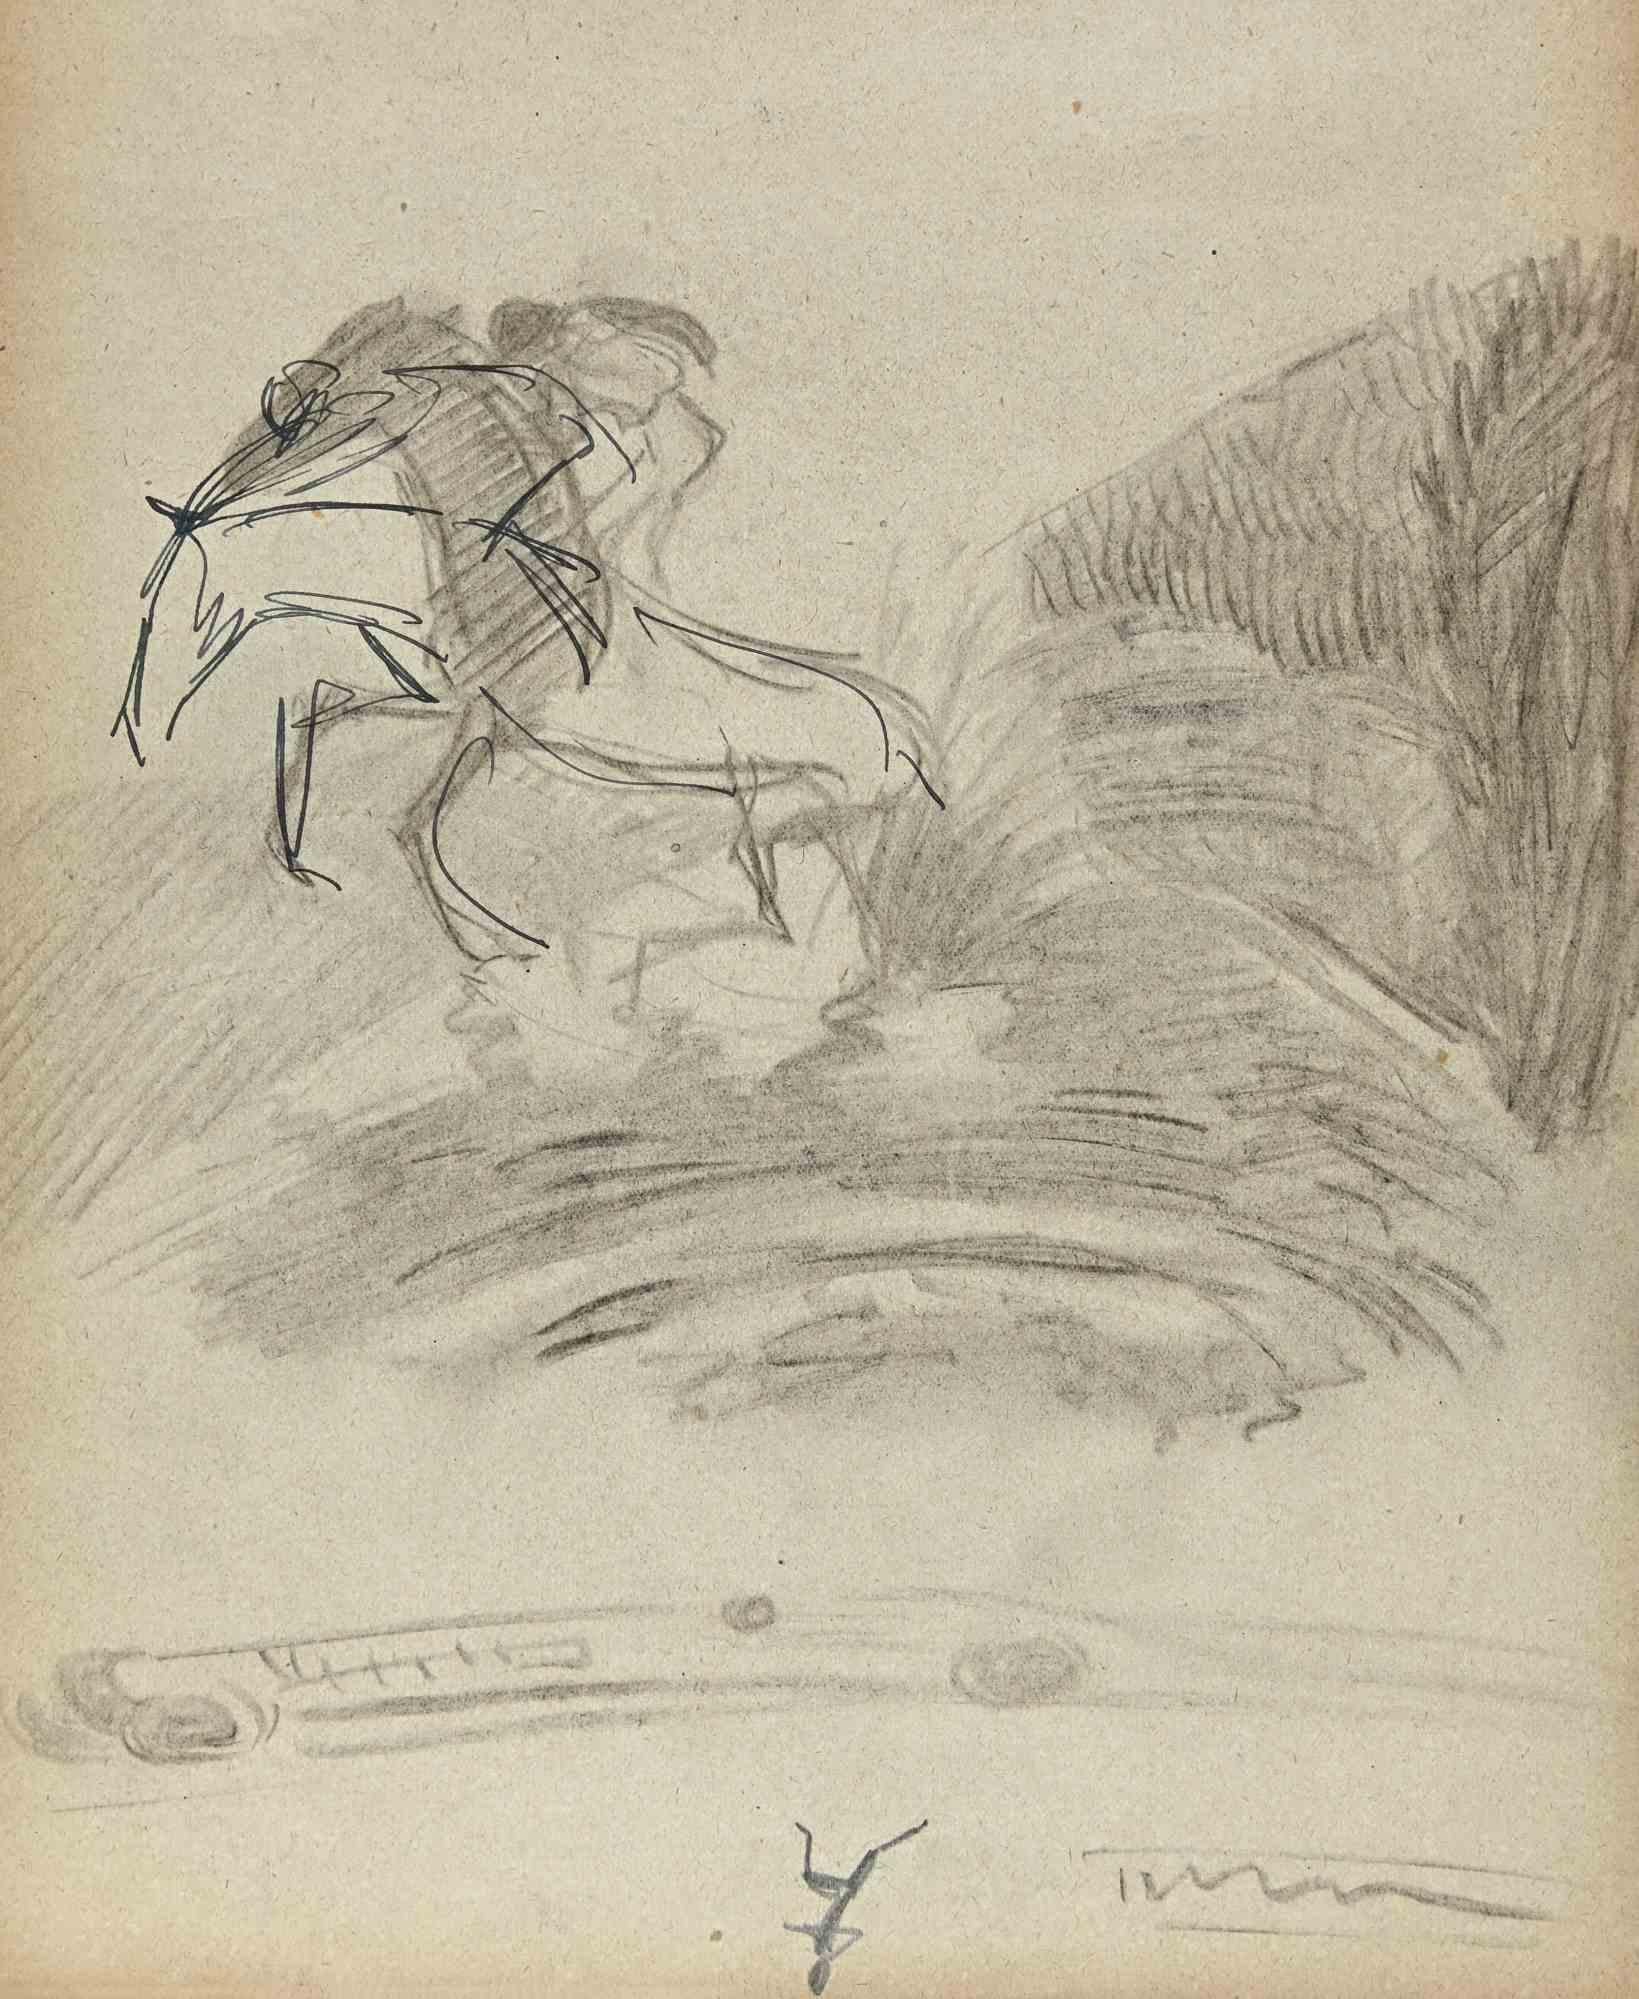 Le cheval chevauchant dans la prairie - dessin de Norbert Meyre - milieu du 20e siècle